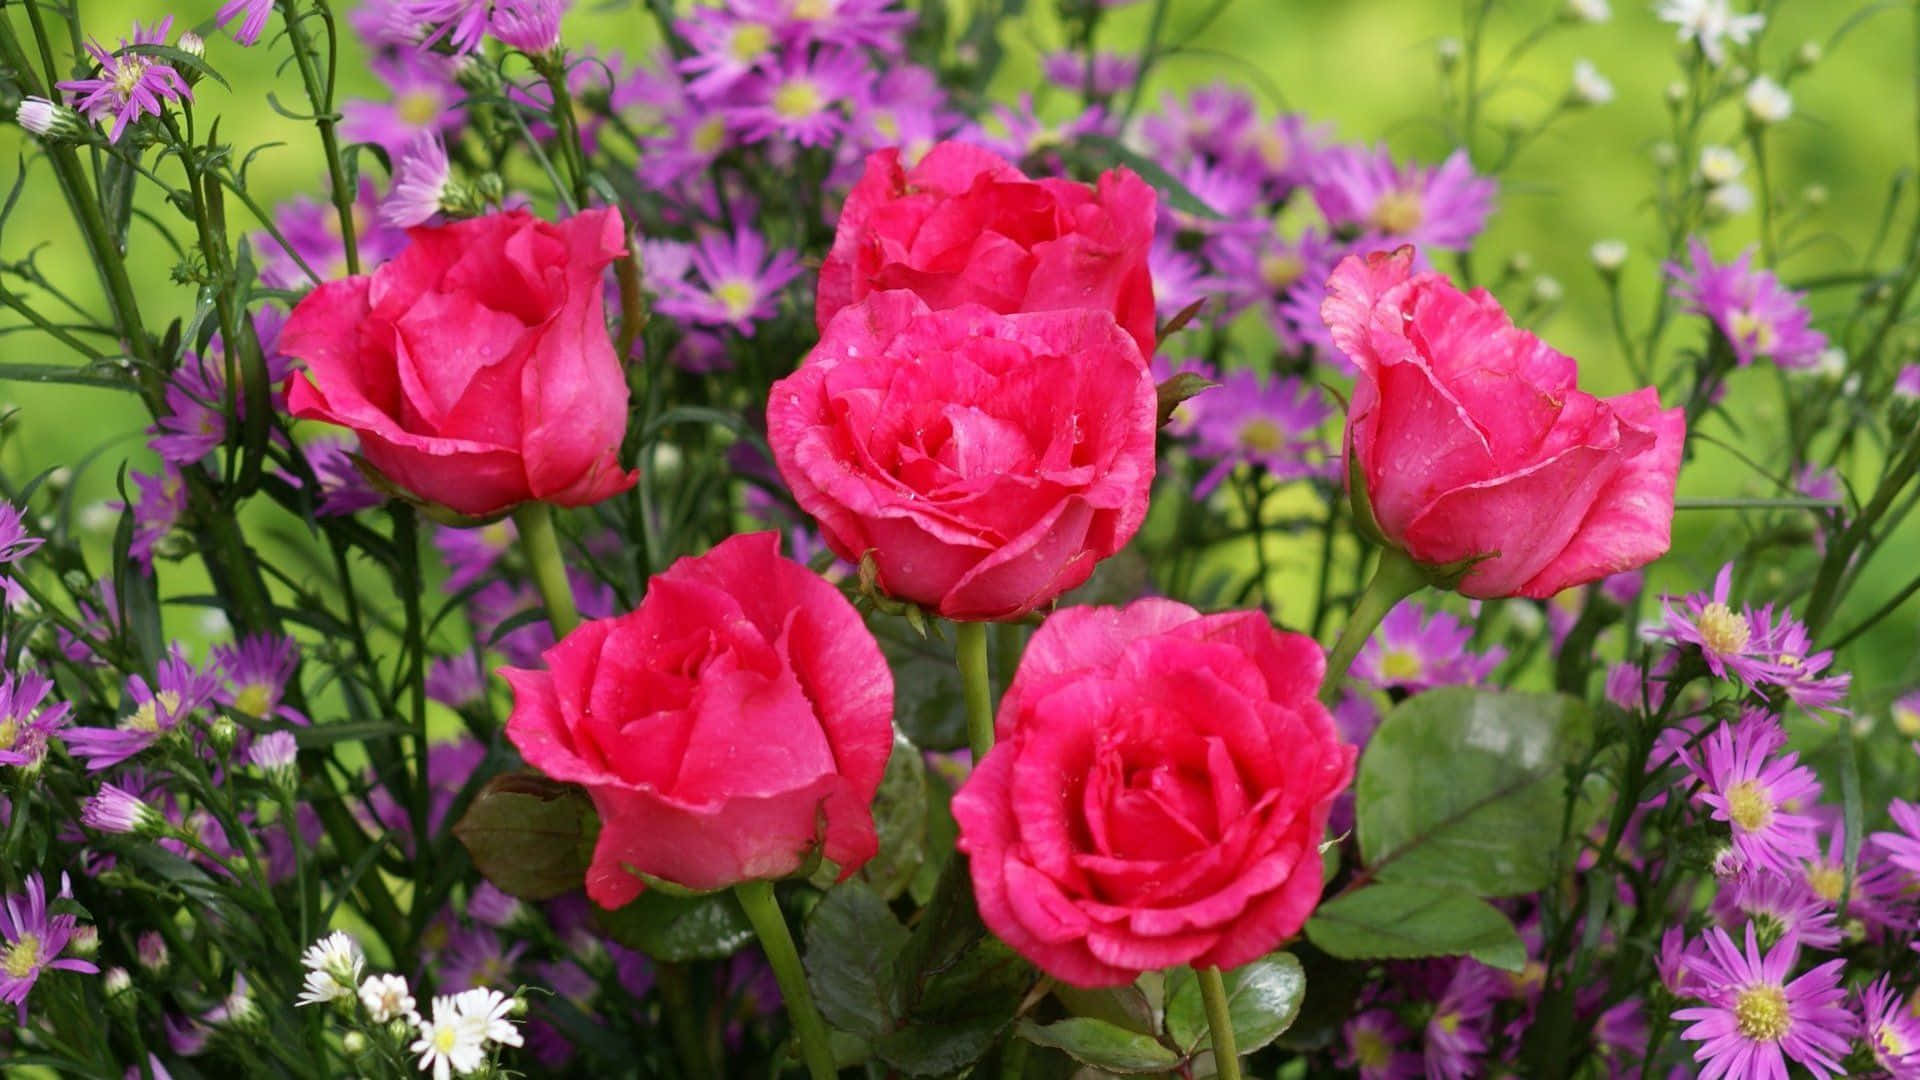 Imagende Rosas De Jardín En Tonos Rosados Y Morados.